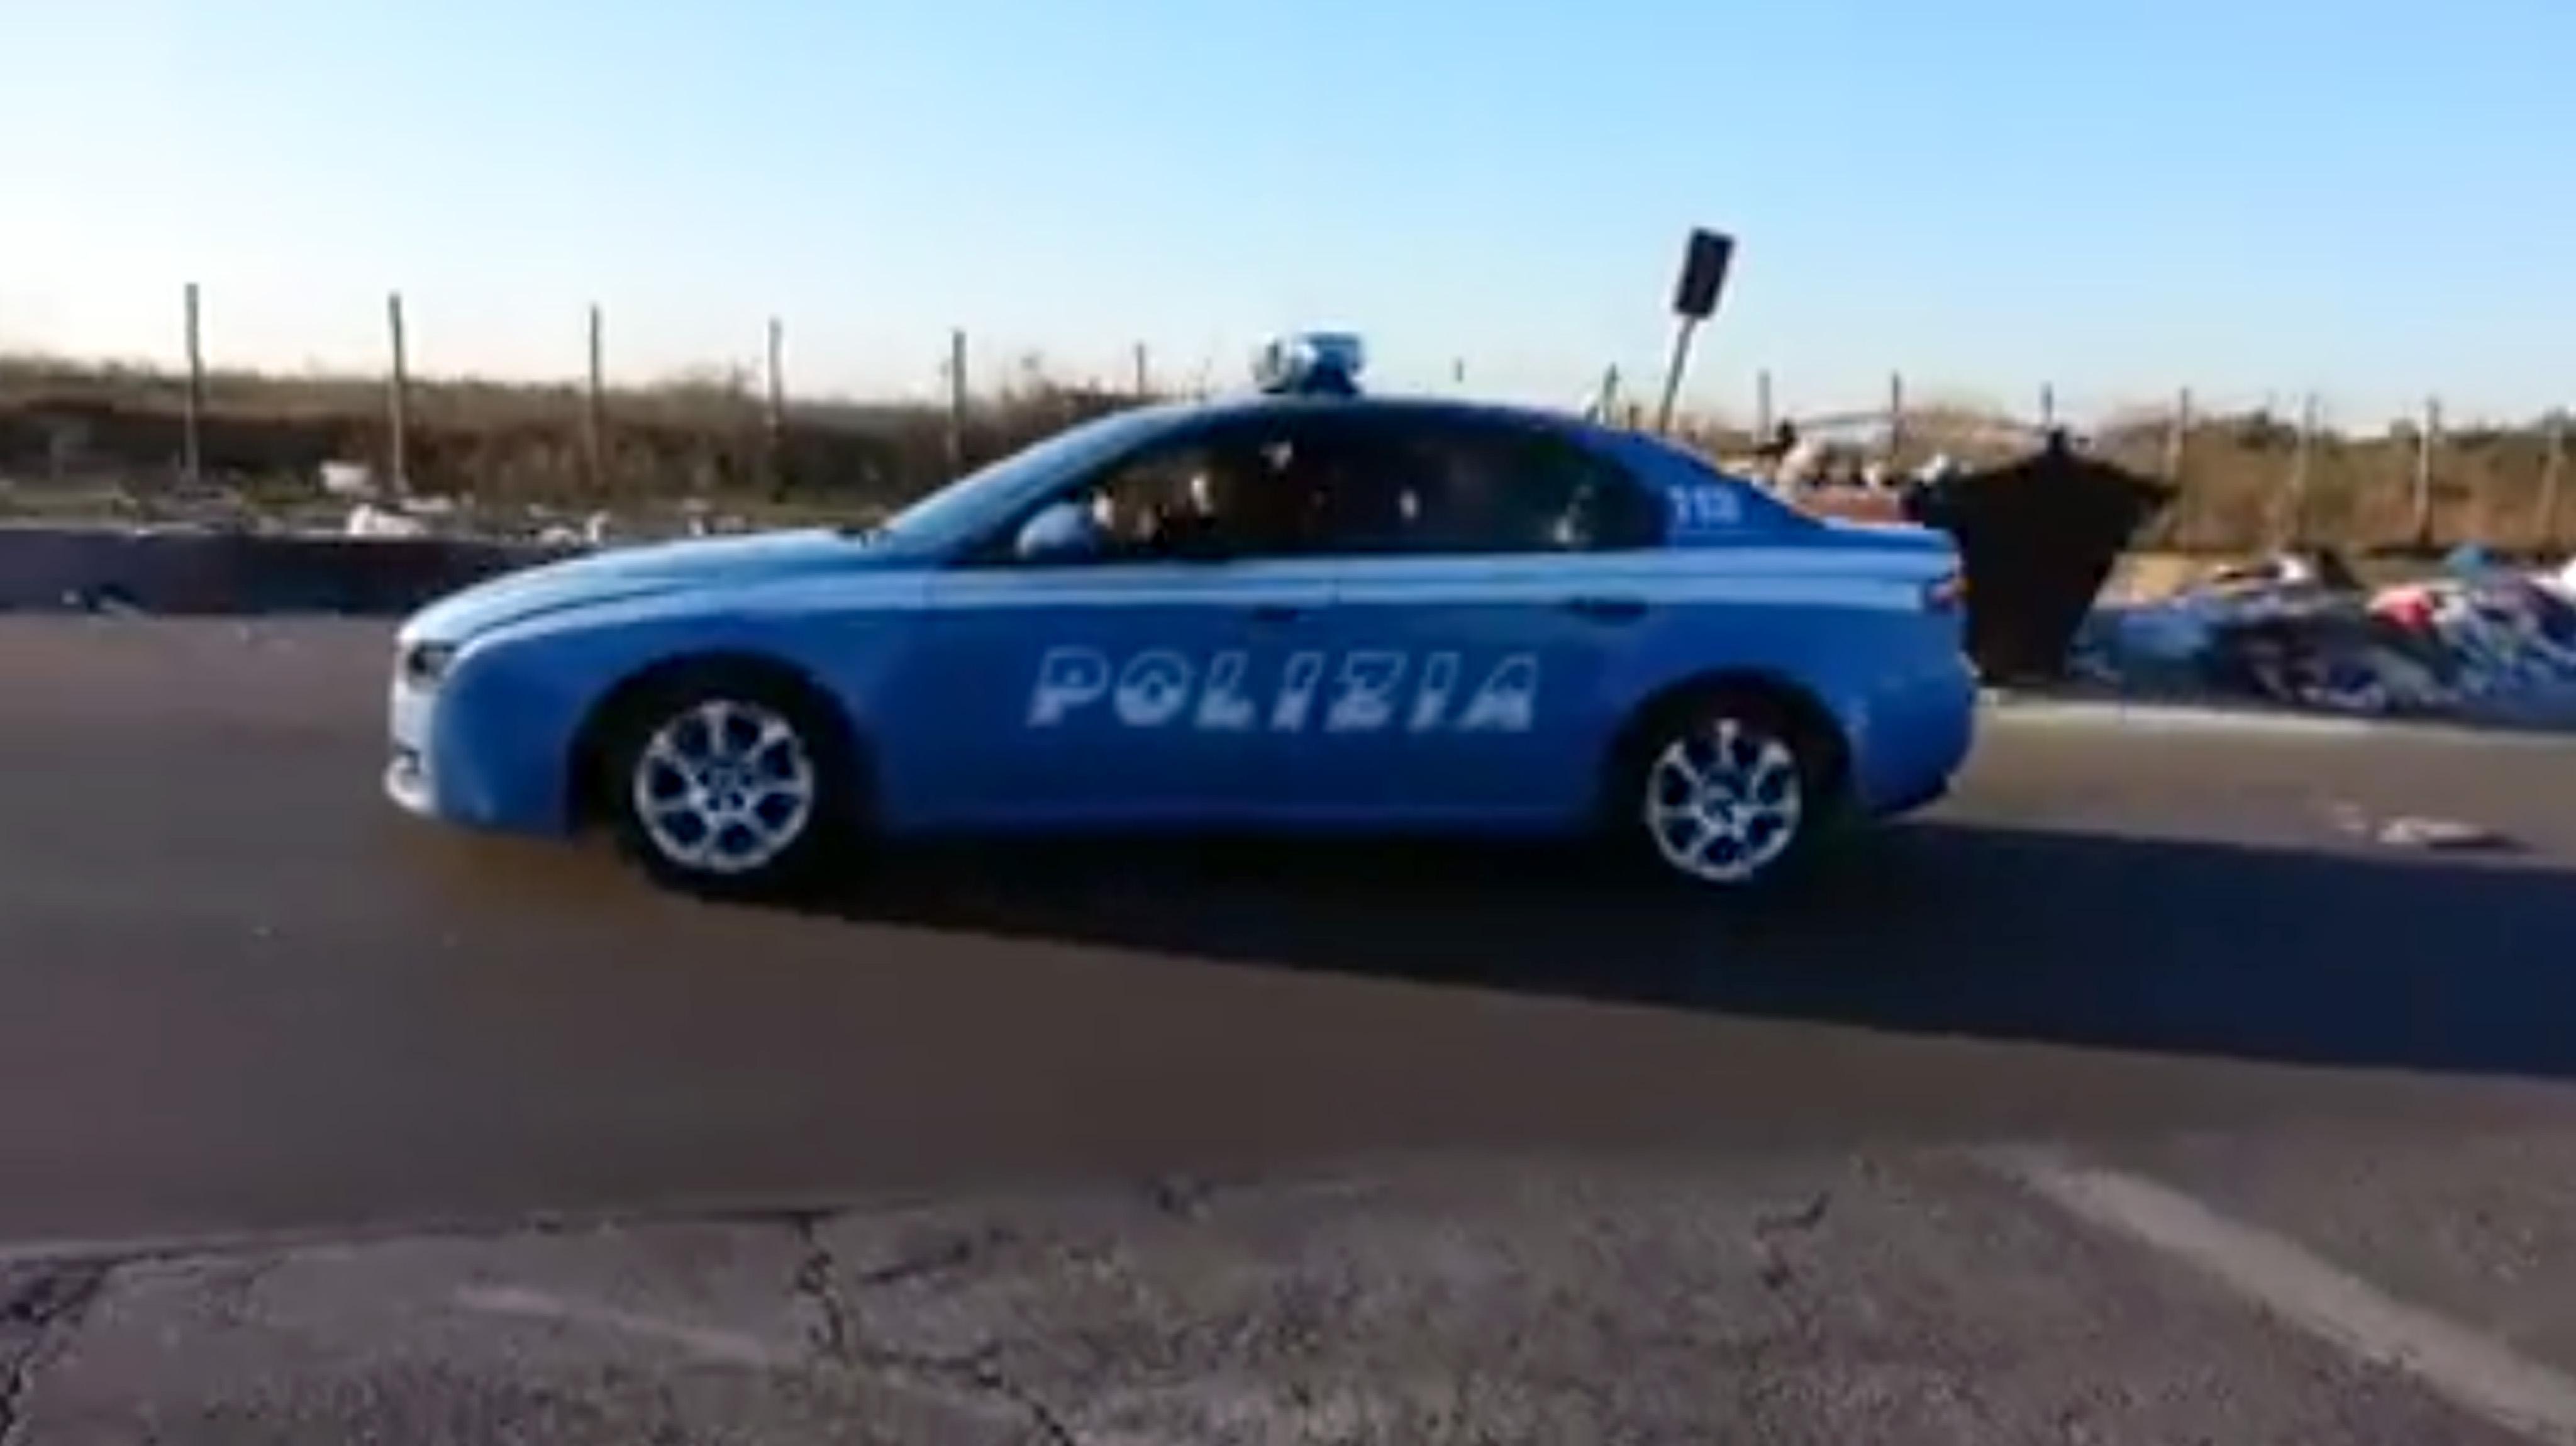 macchine della polizia italiana